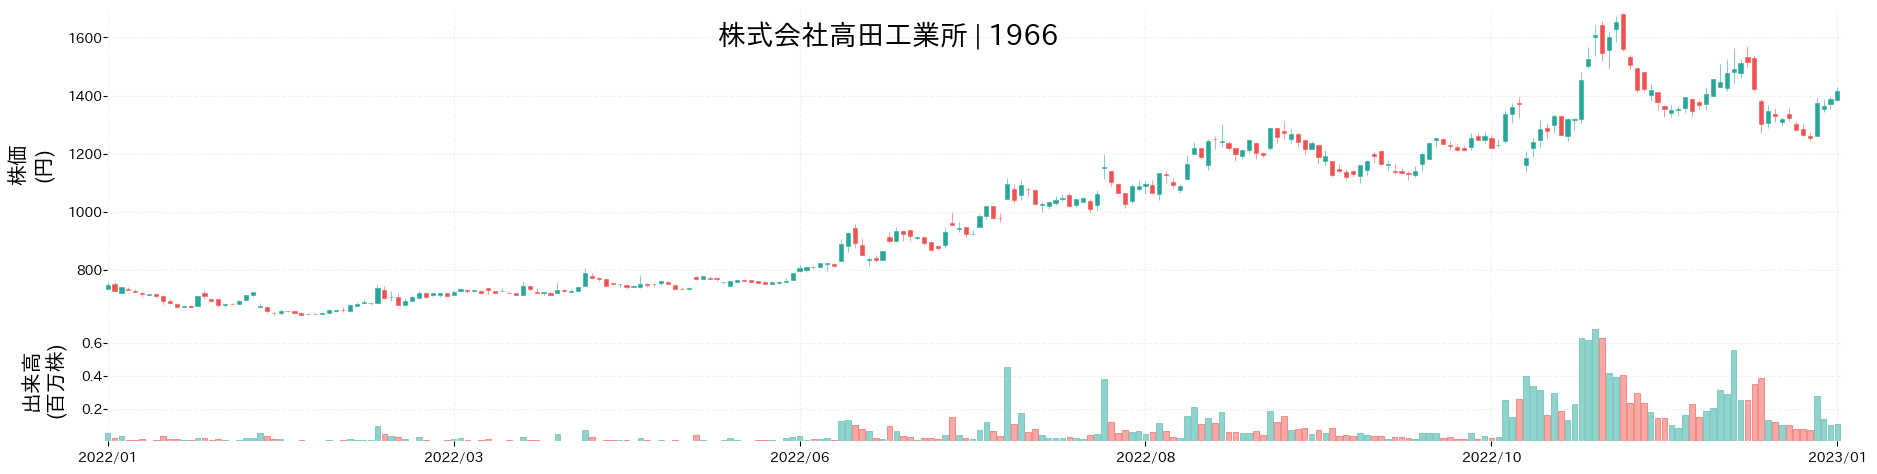 高田工業所の株価推移(2022)